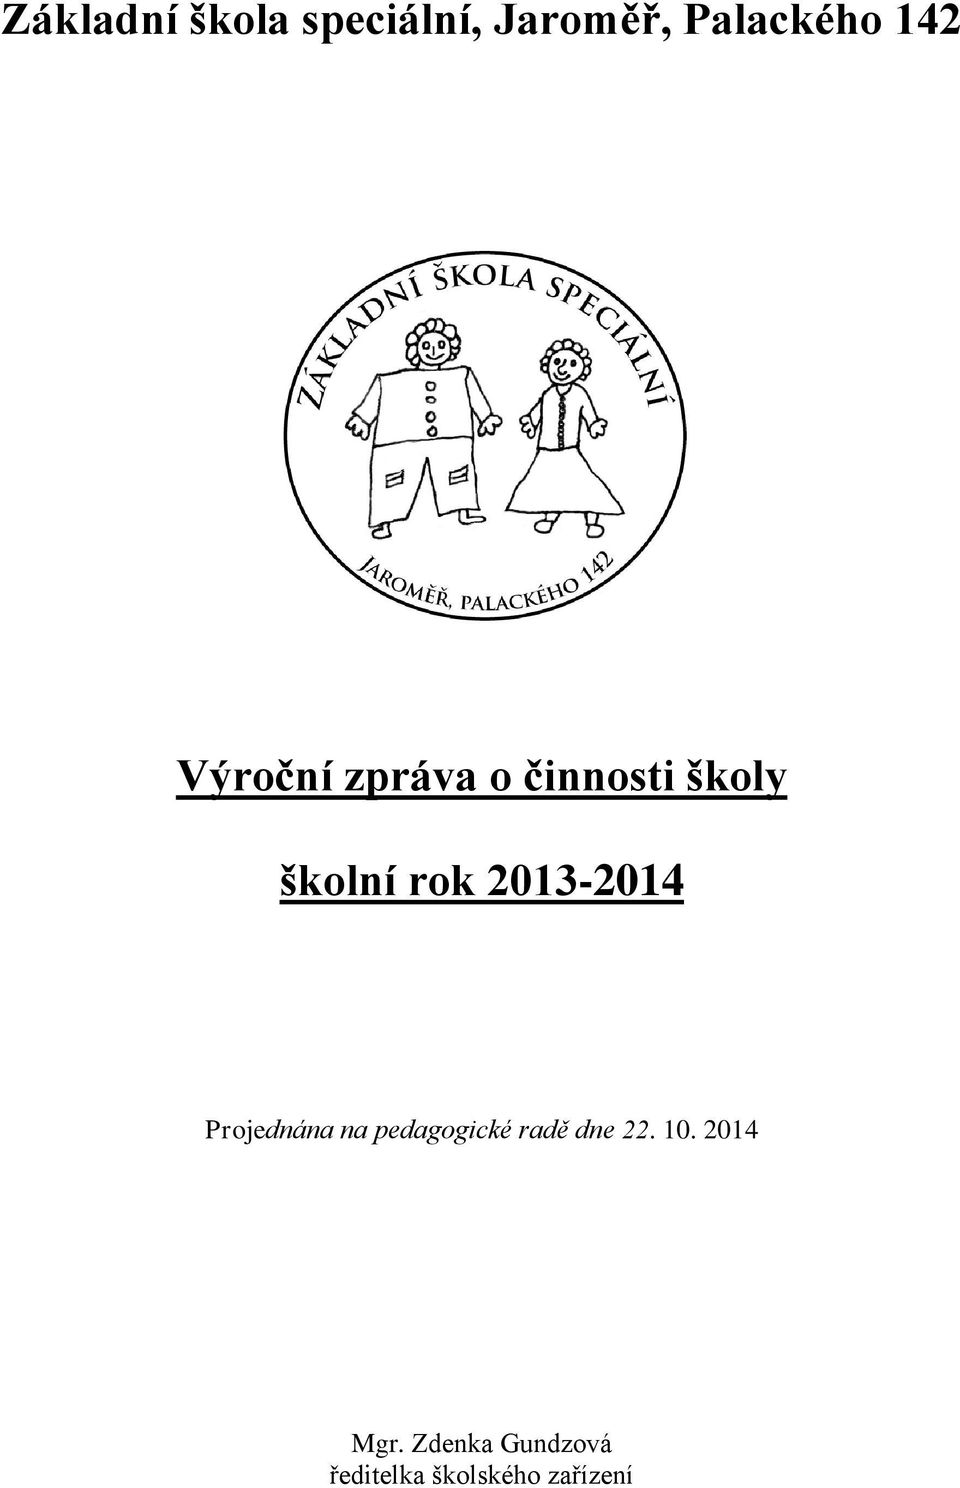 2013-2014 Projednána na pedagogické radě dne 22.